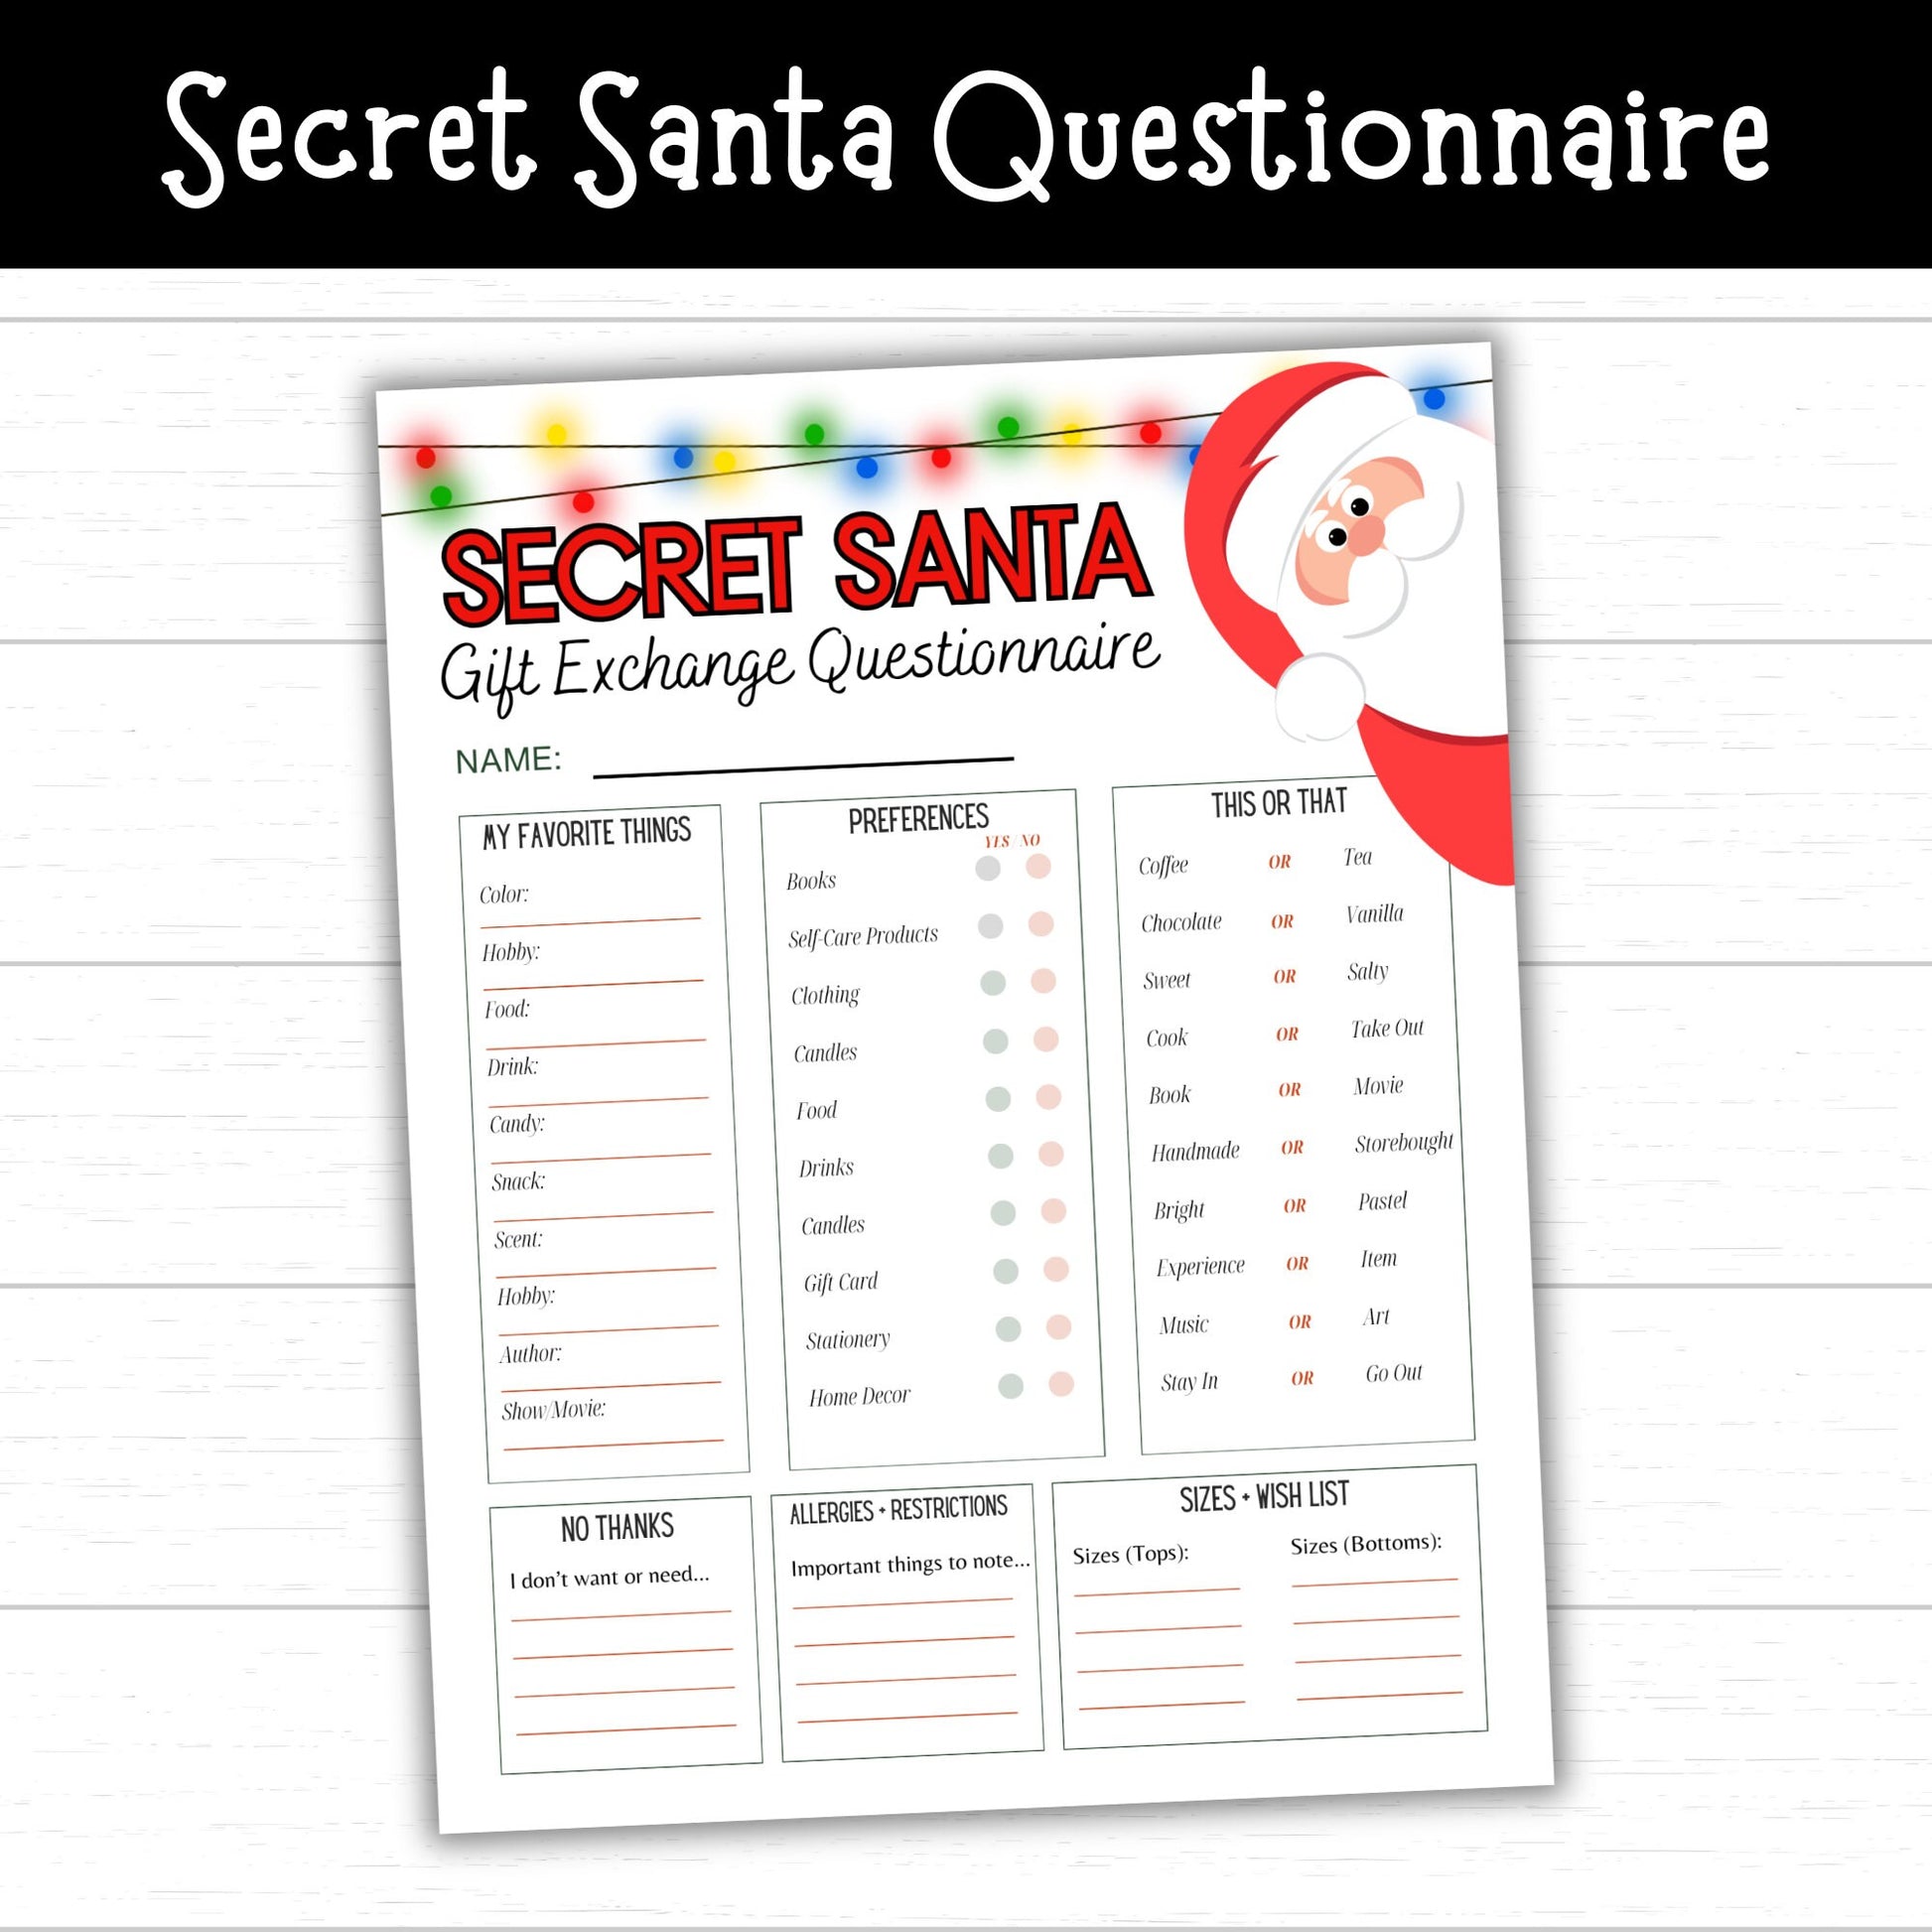 Secret Santa Questionnaire, Secret Santa Gift Exchange Printable, Questions for Secret Santa, Secret Santa Printables, Secret Santa Form